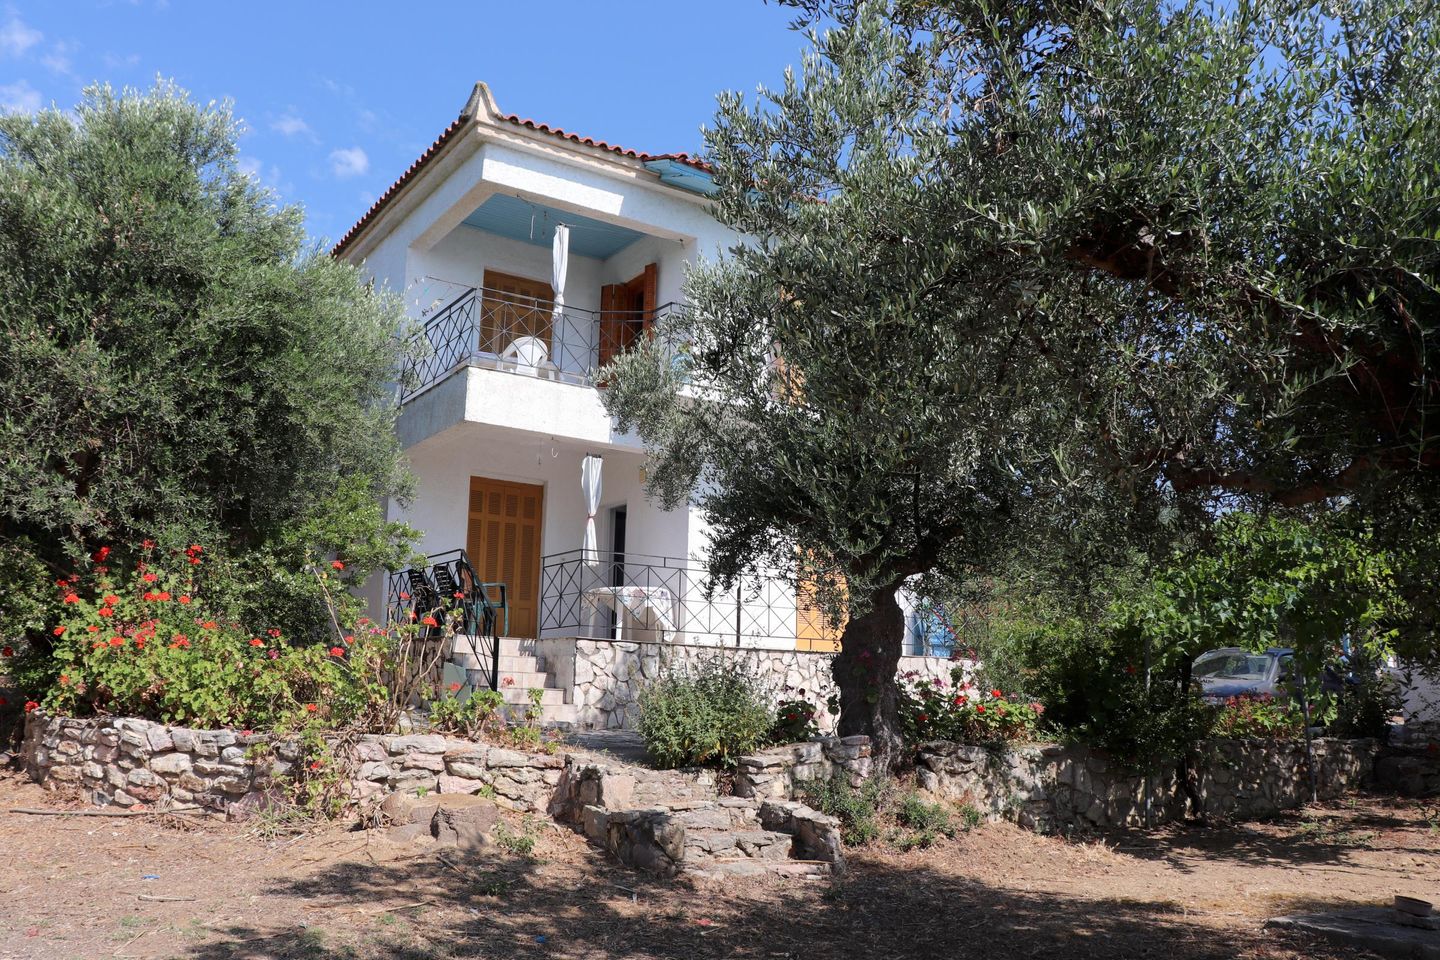 Ferienhaus inmitten von Olivenhainen, Meerblick, W  in Griechenland